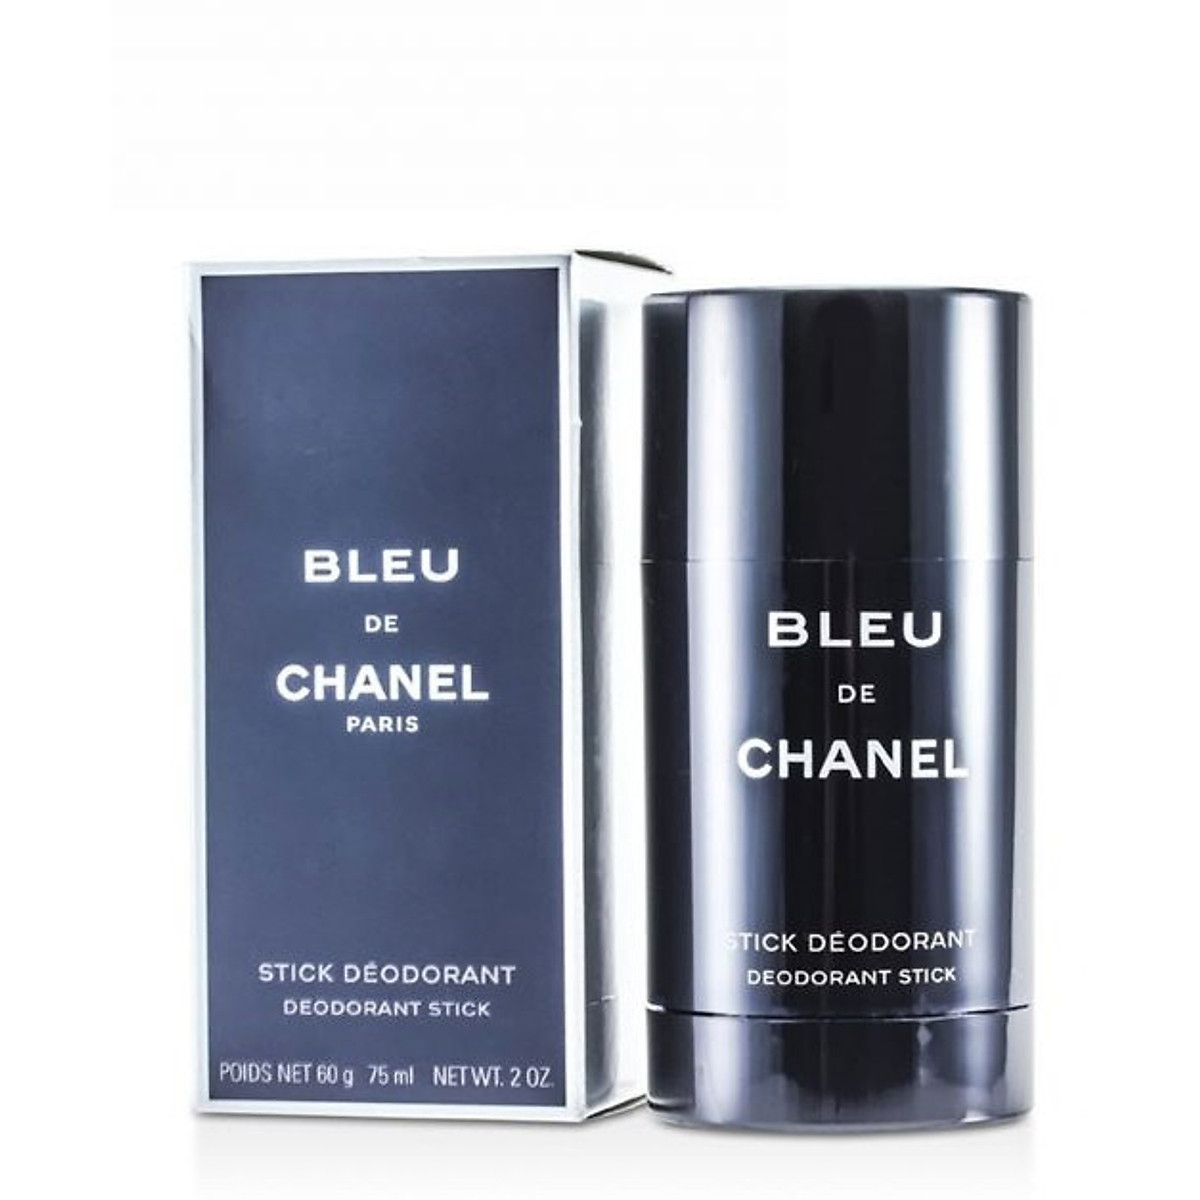 Mua Lăn Khử Mùi Chanel Bleu De Stick Deodorant 75ml chính hãng Pháp Giá tốt